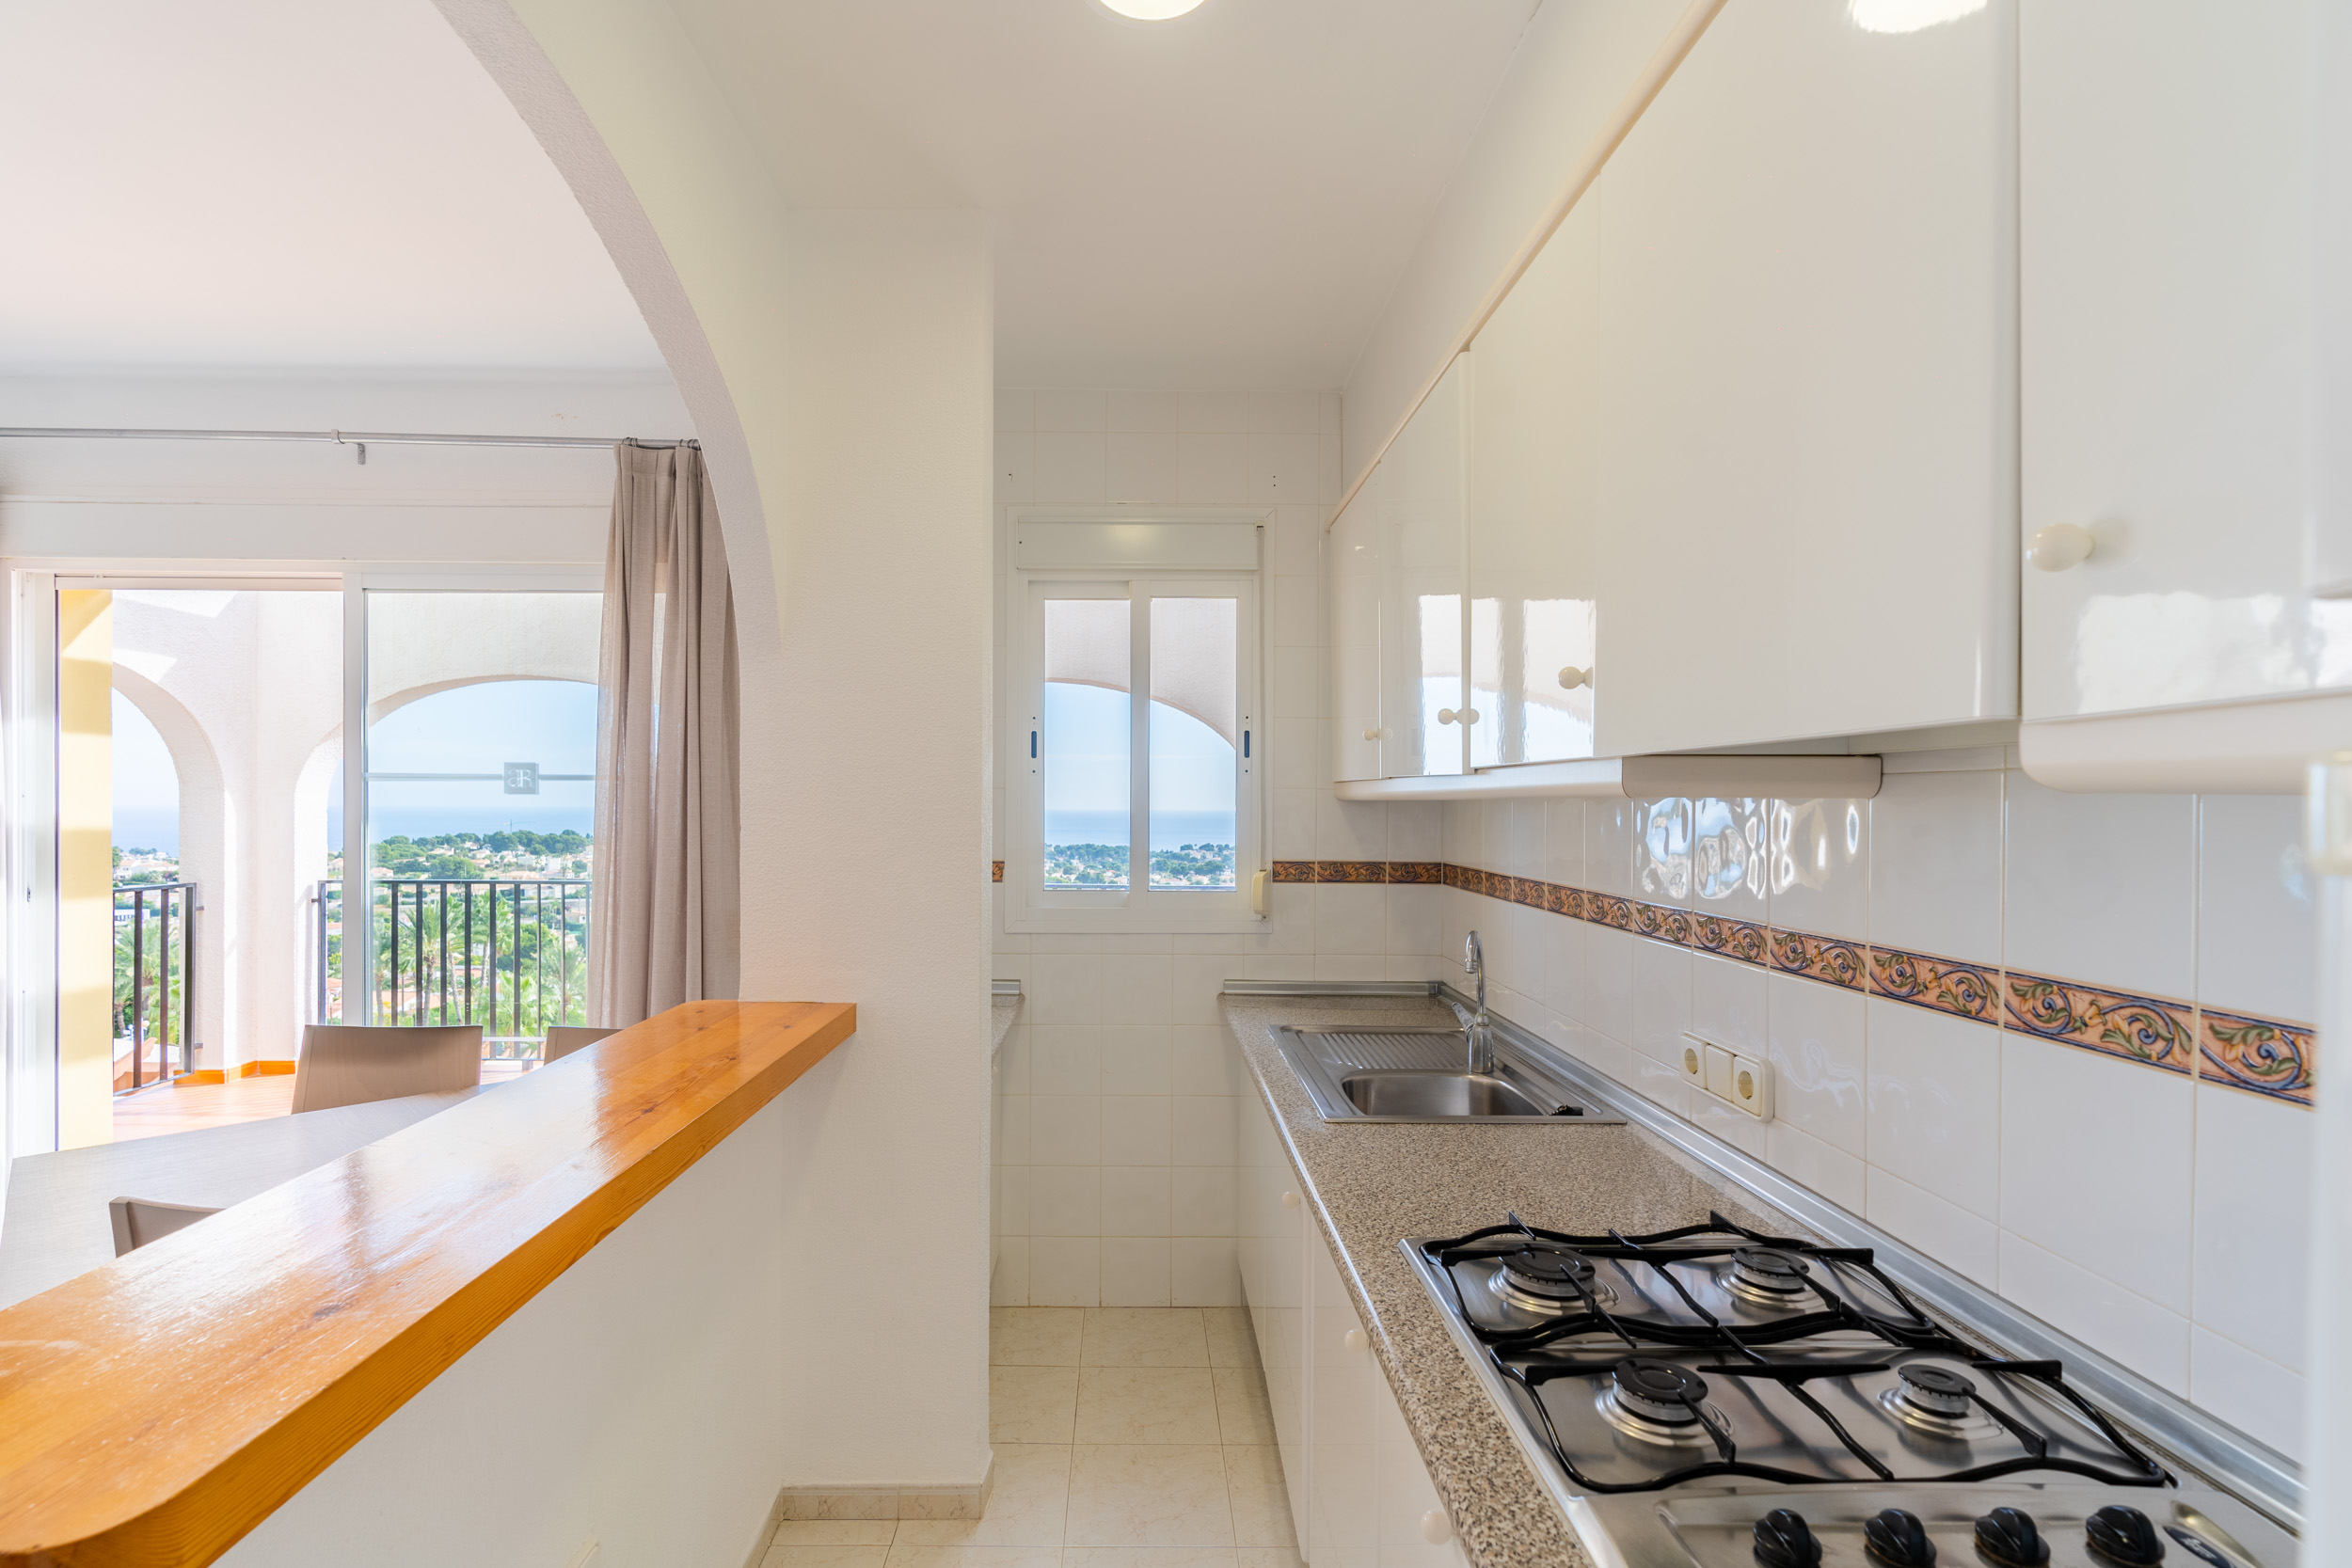 Bungalow en venta en Calpe en zona residencial con vistas al mar y Peñon de Ifach